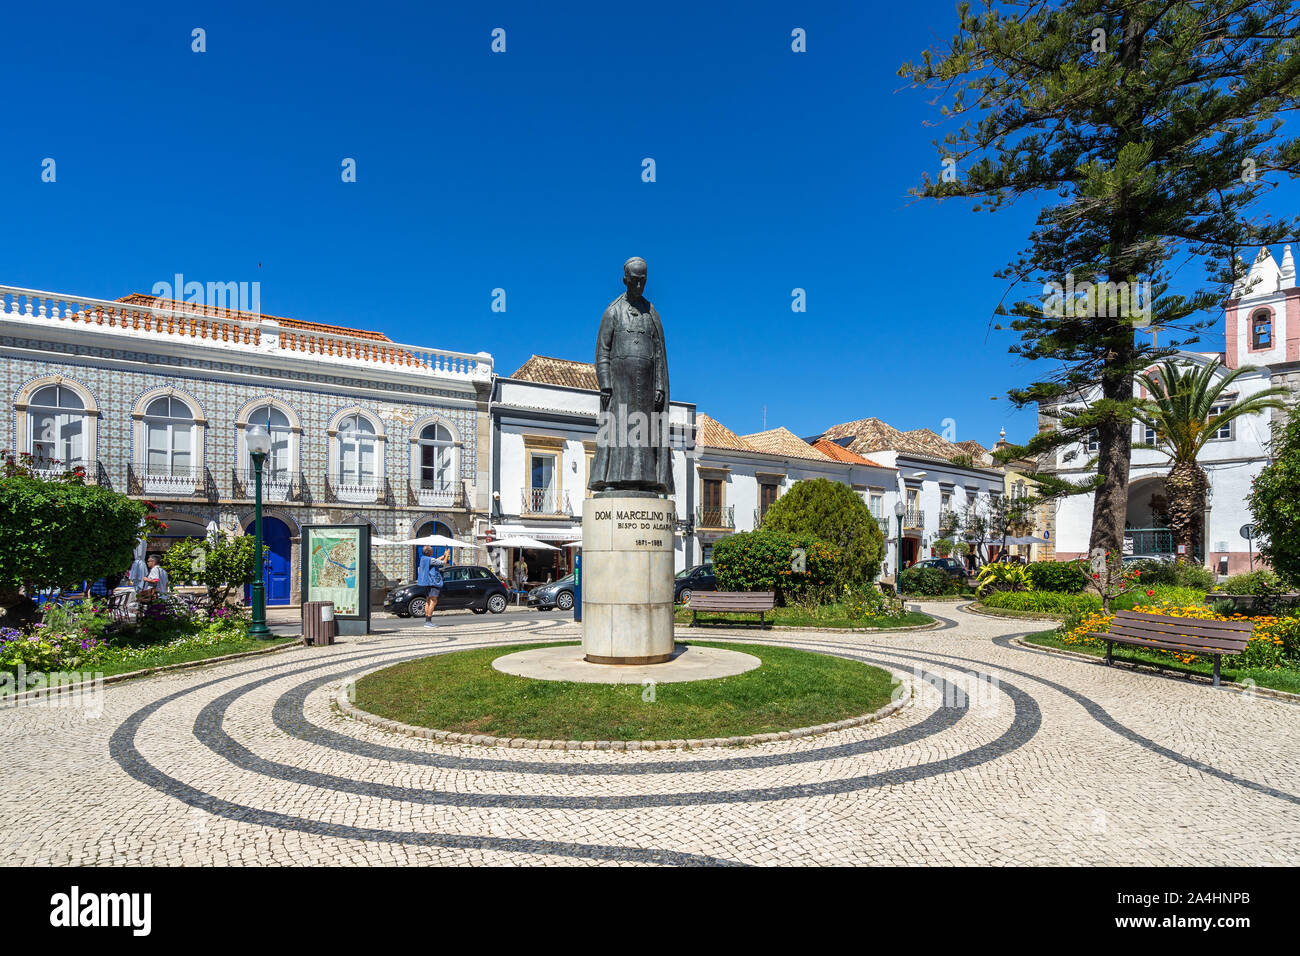 Nice square with gardens in Tavira old town. Tavira, Algarve, Portugal, April 2019 Stock Photo